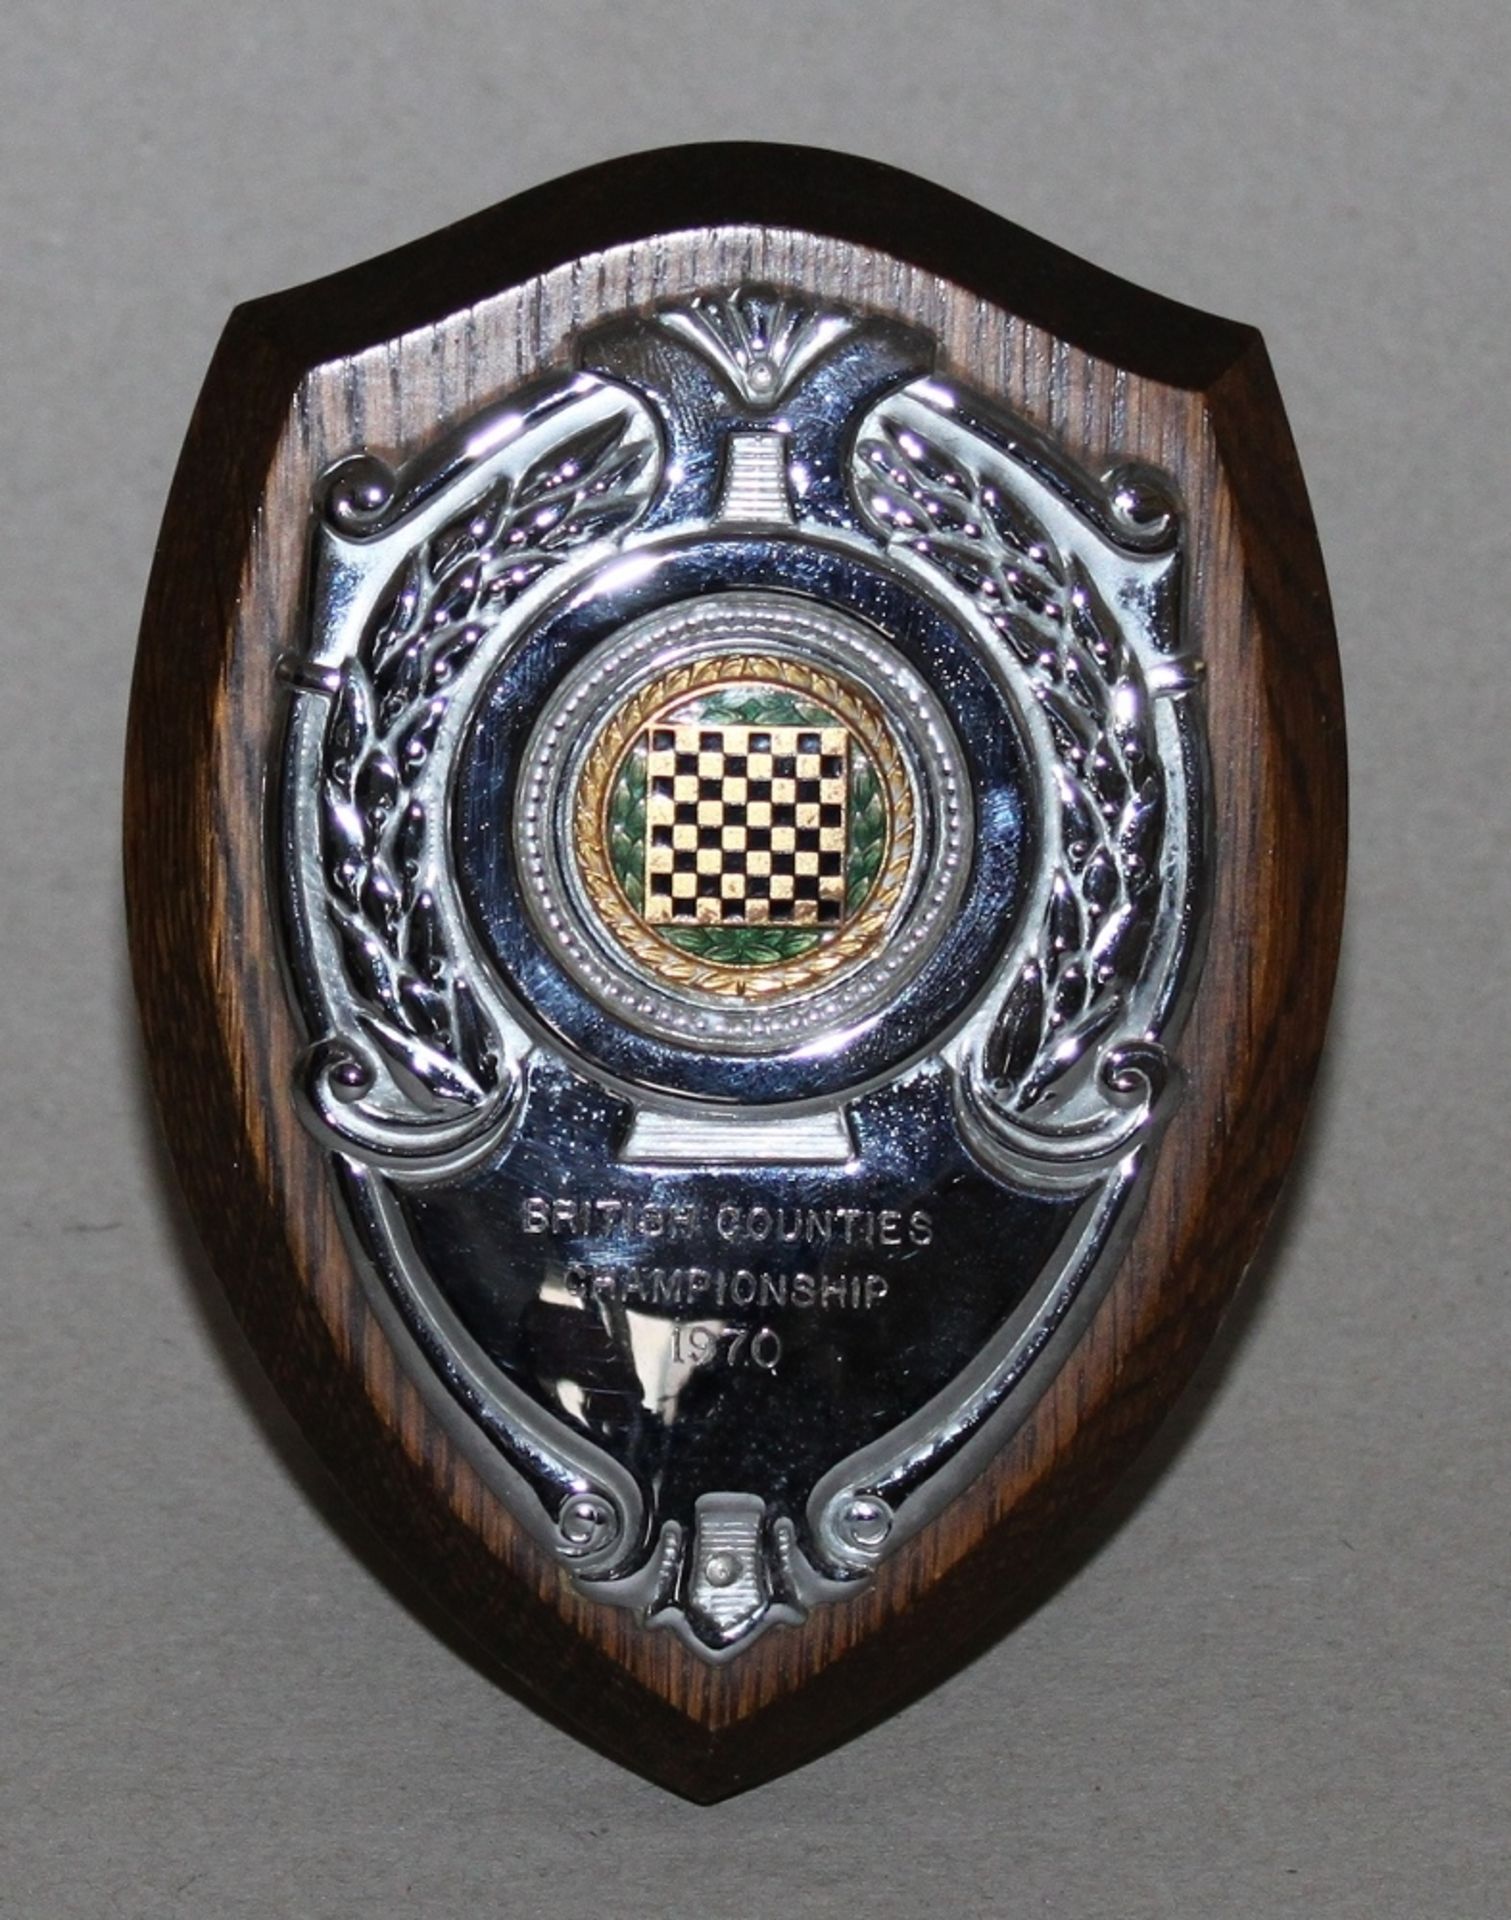 Medaille aus Bronze zum Bayerischen Schachkongress in Coburg 1975. Arbeit von B. H. Mayer,